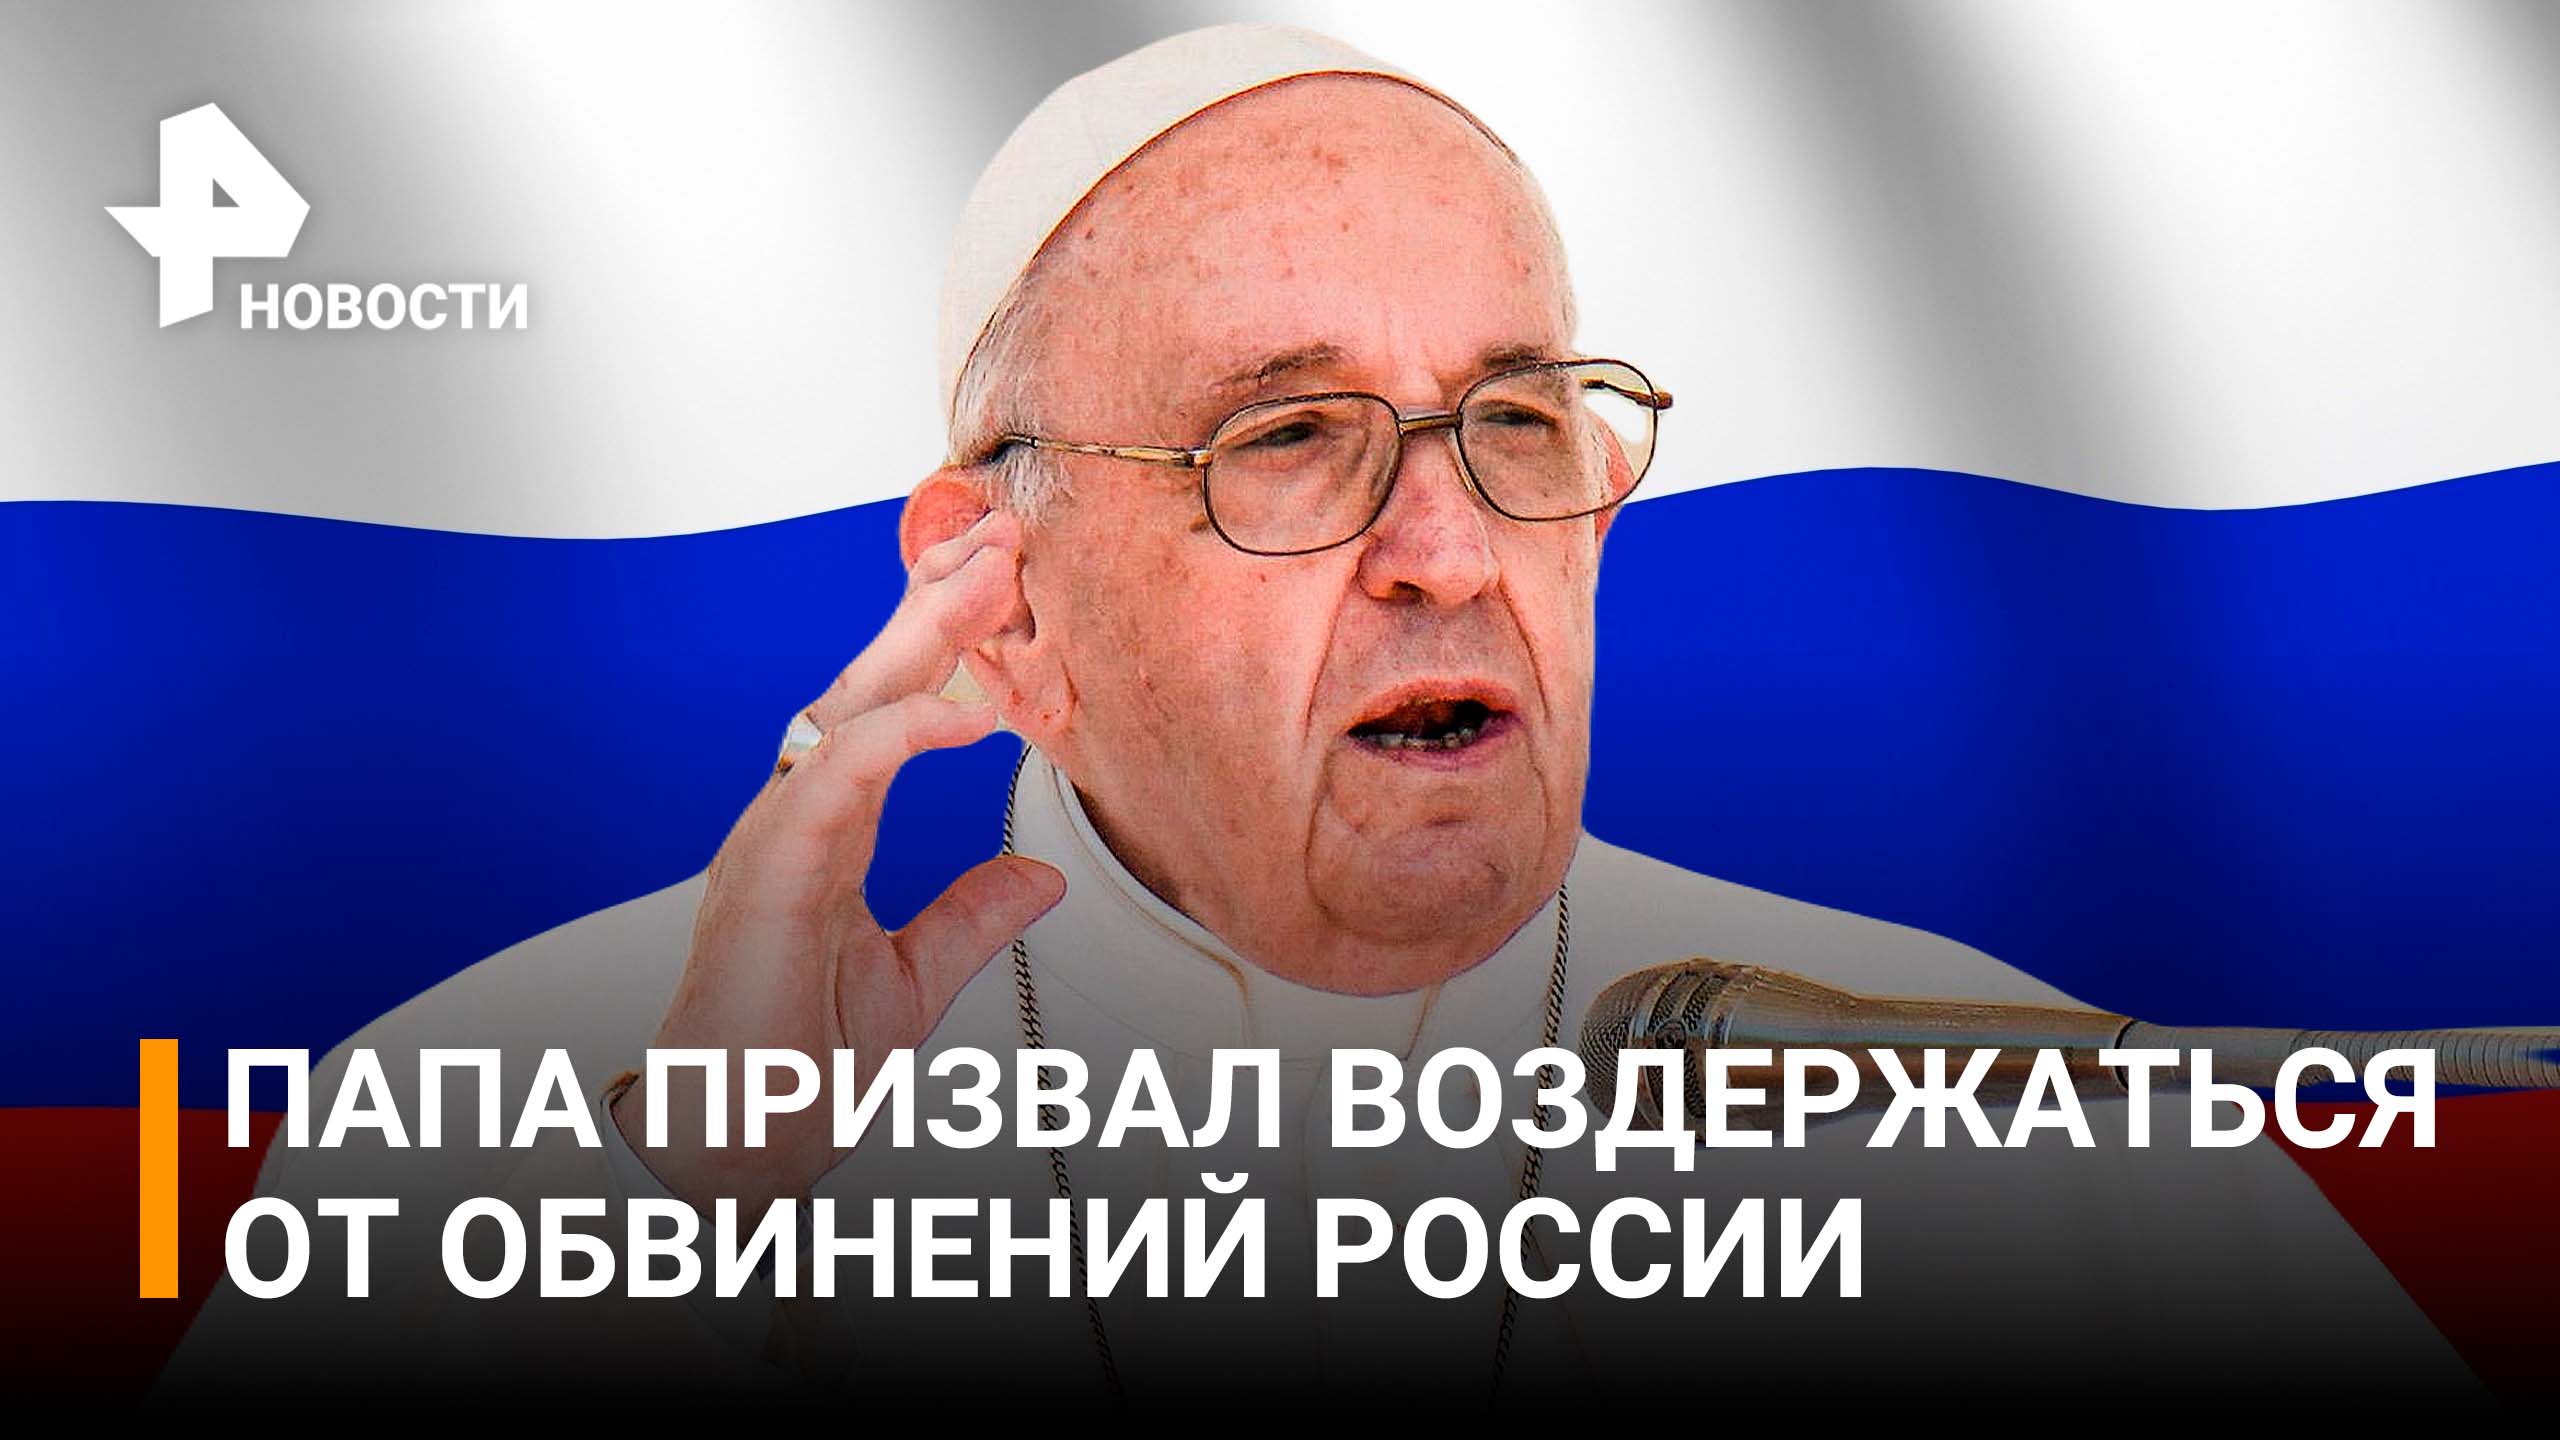 Папа Римский призвал воздержаться от обвинений в адрес России / РЕН Новости